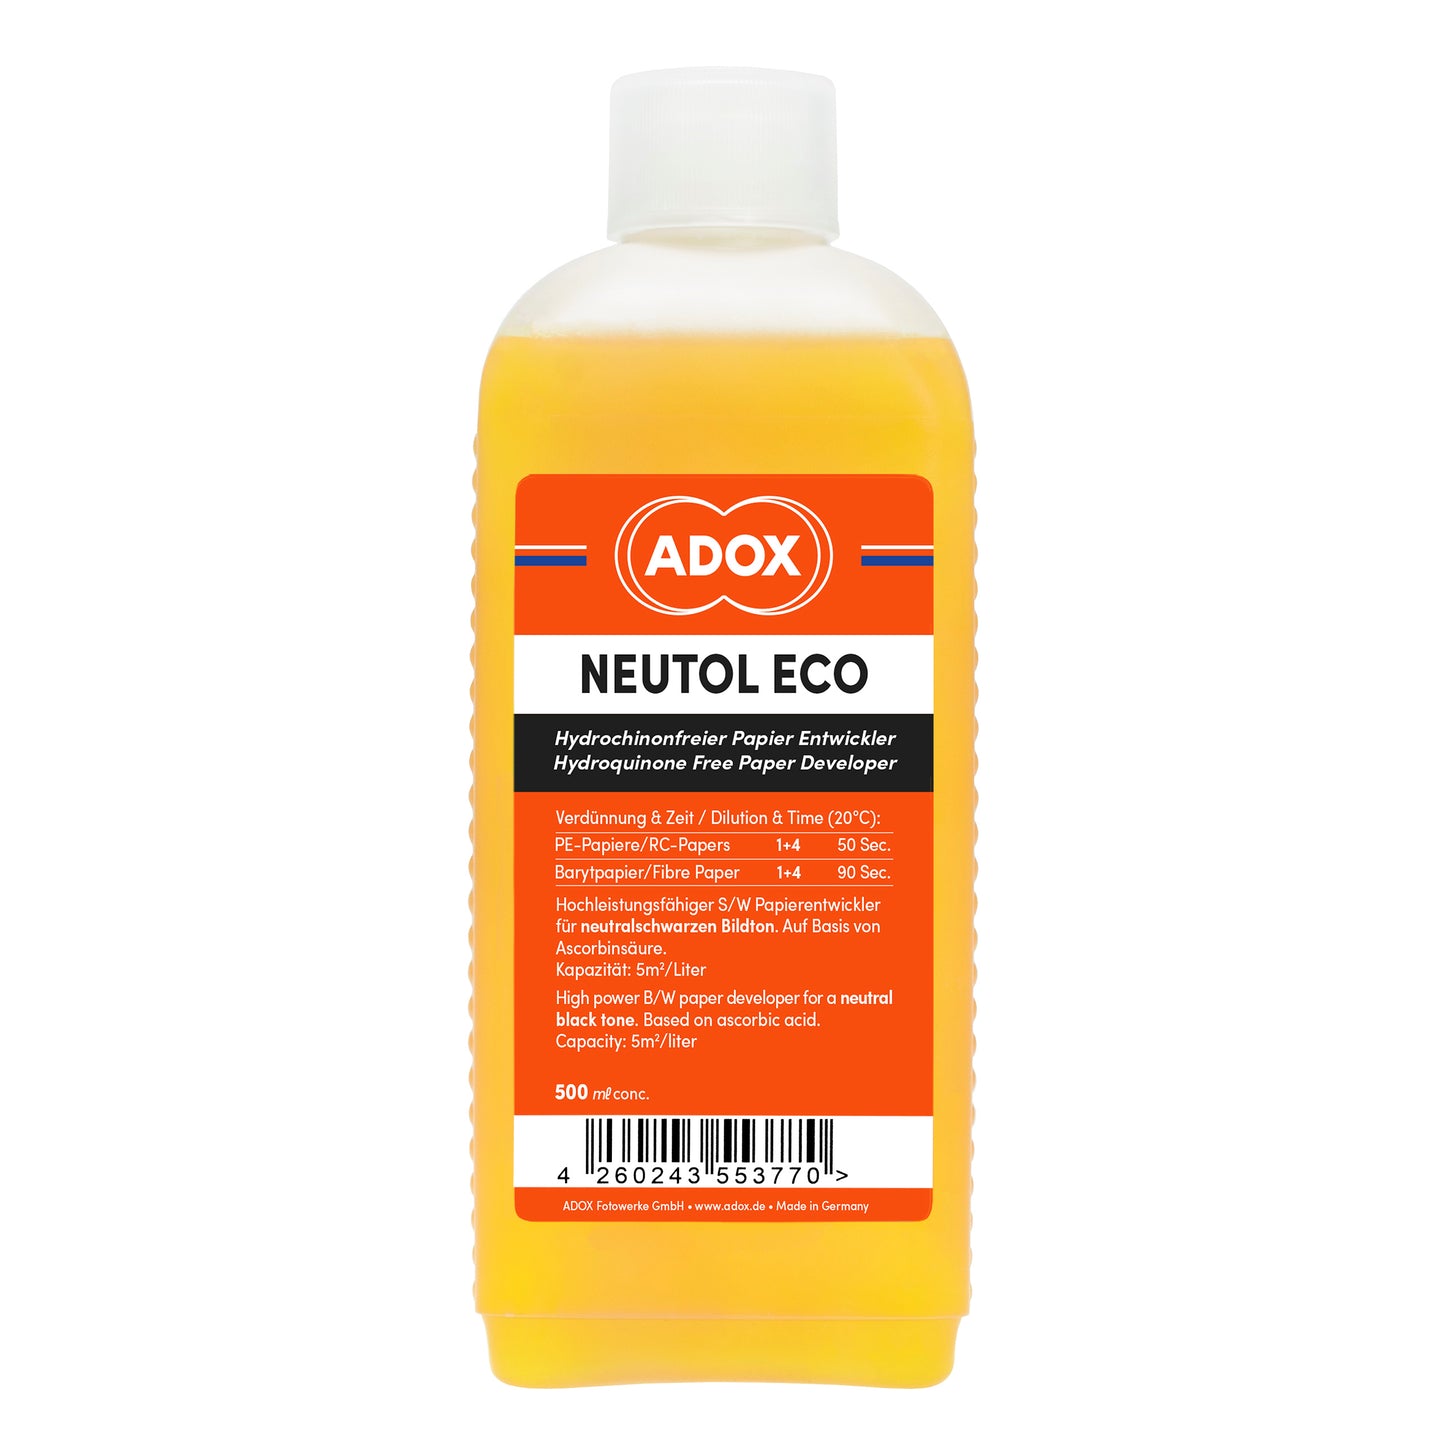 Adox Neutol Eco 500ml Paper Developer